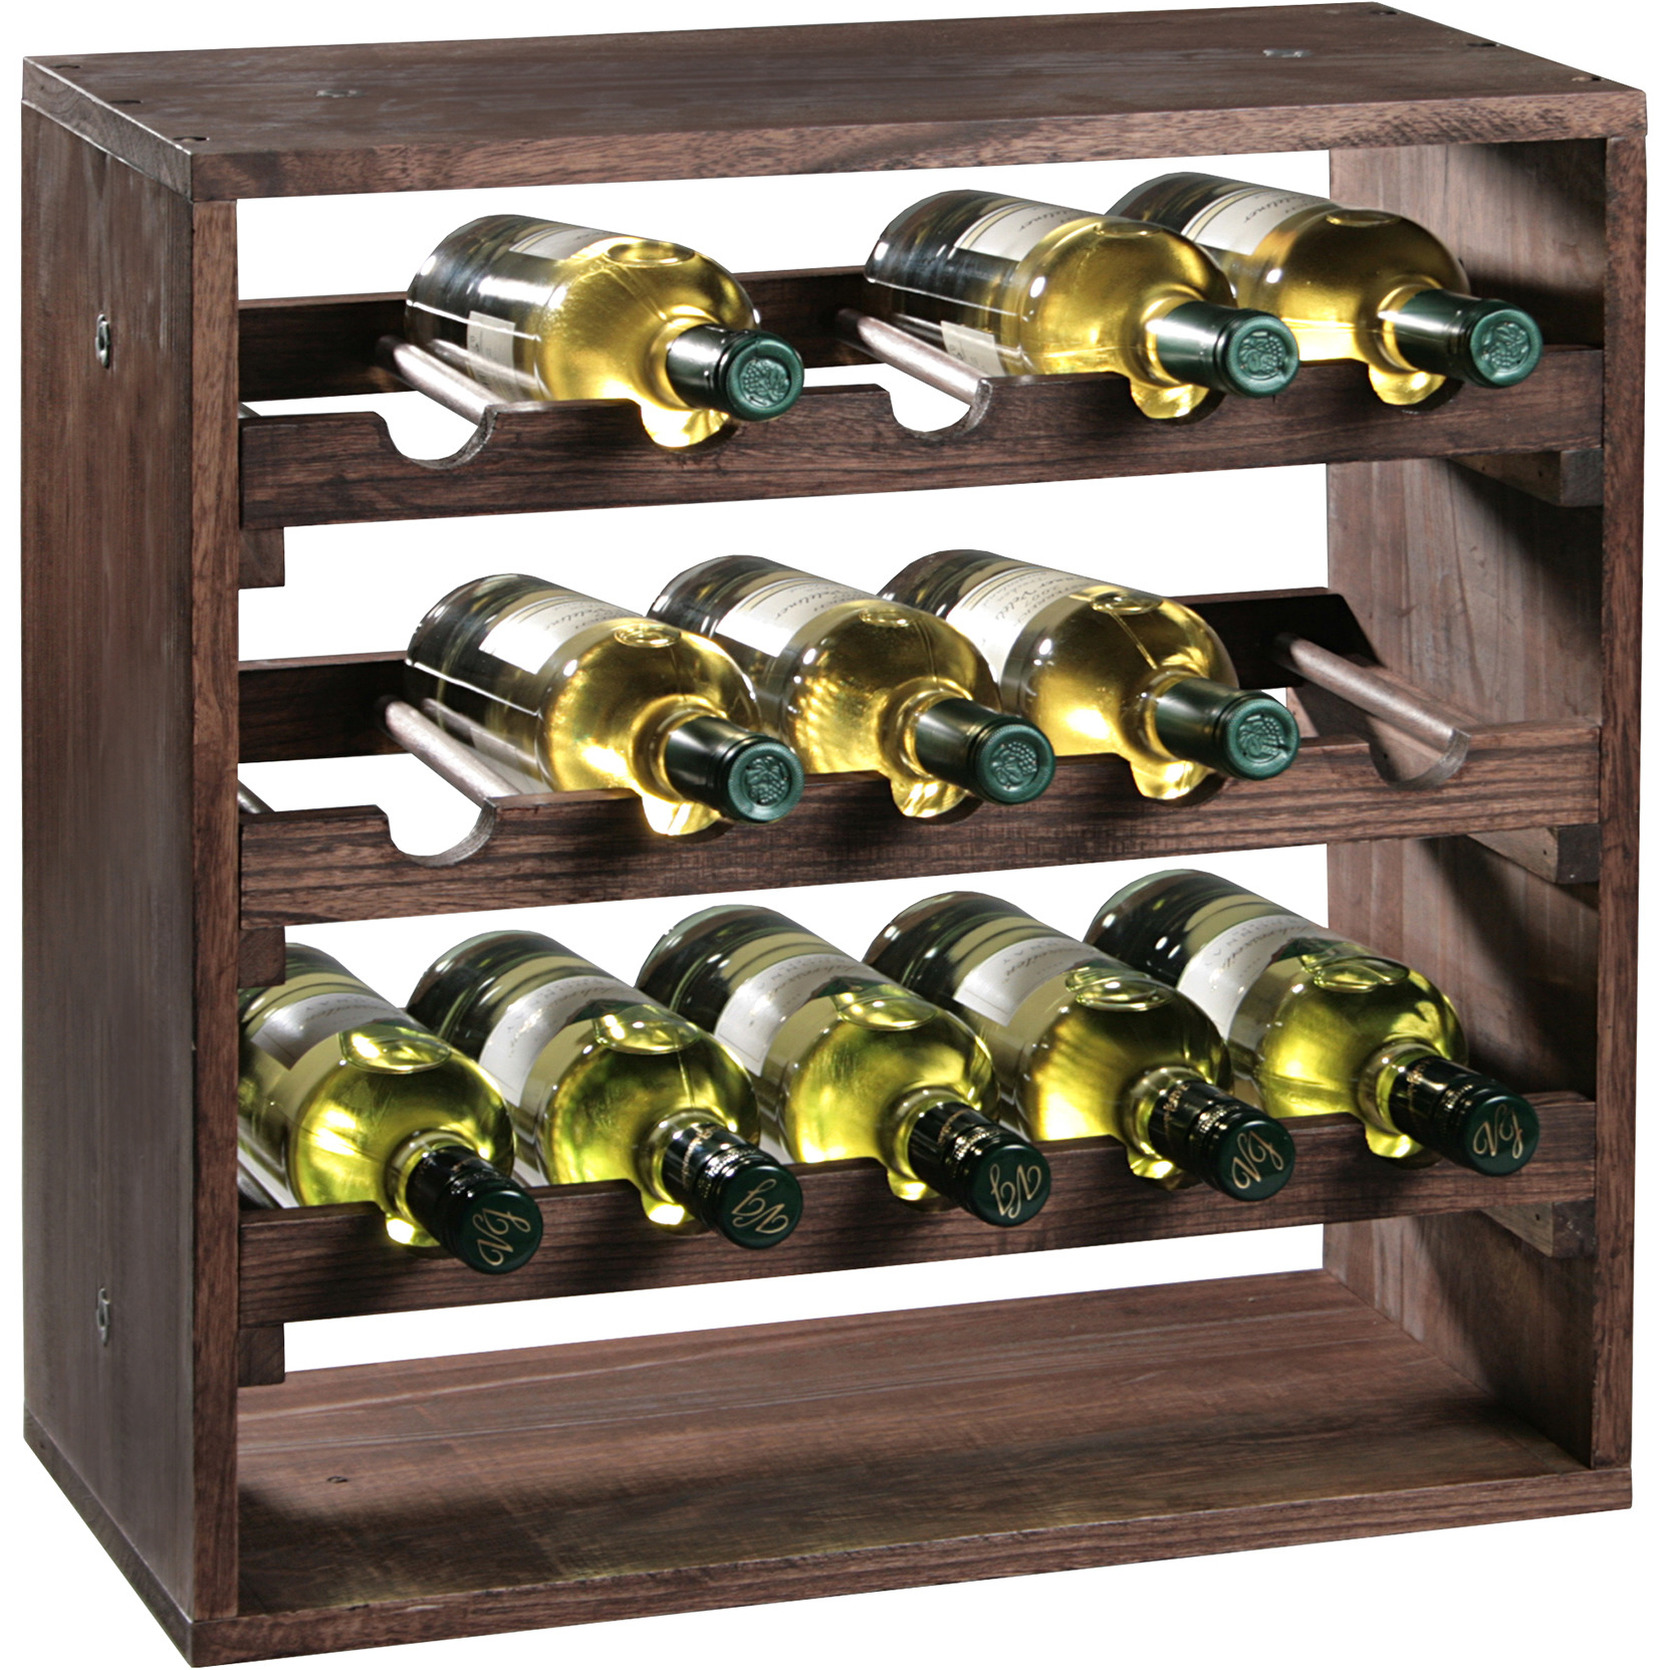 Houten wijnflessen rek-wijnrek vierkant voor 15 flessen 25 x 50 x 50 cm